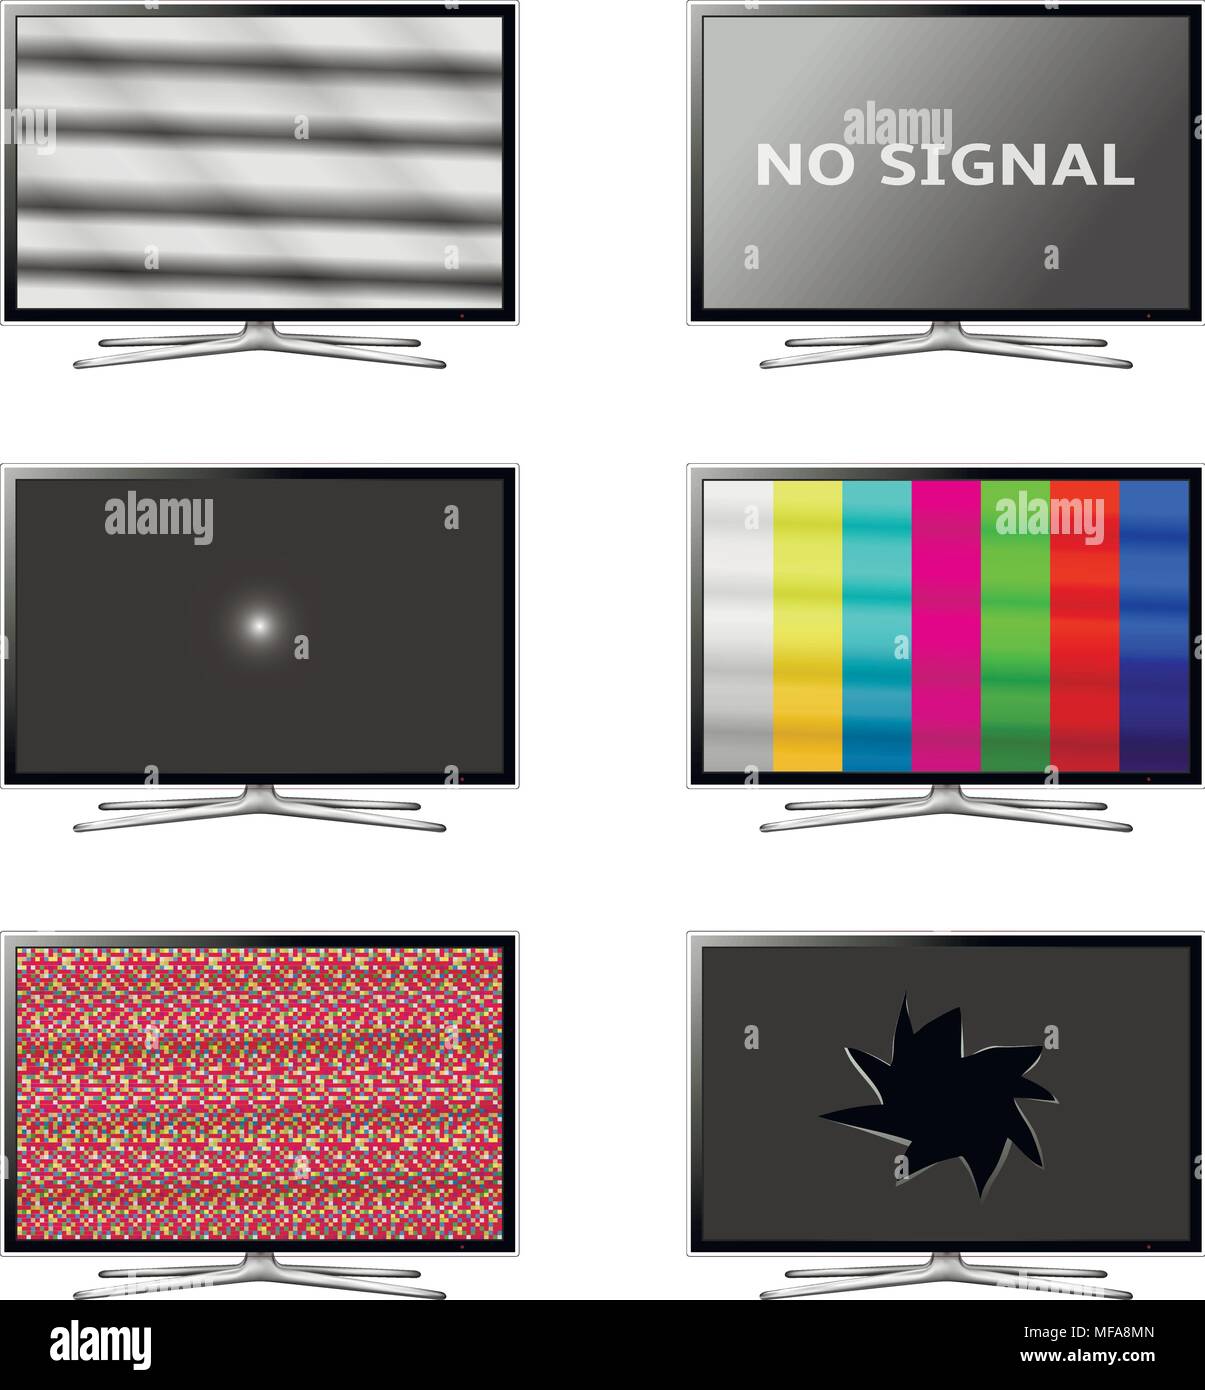 Flat screen smart tv set. No signal tv screens. Vector eps10. Stock Vector